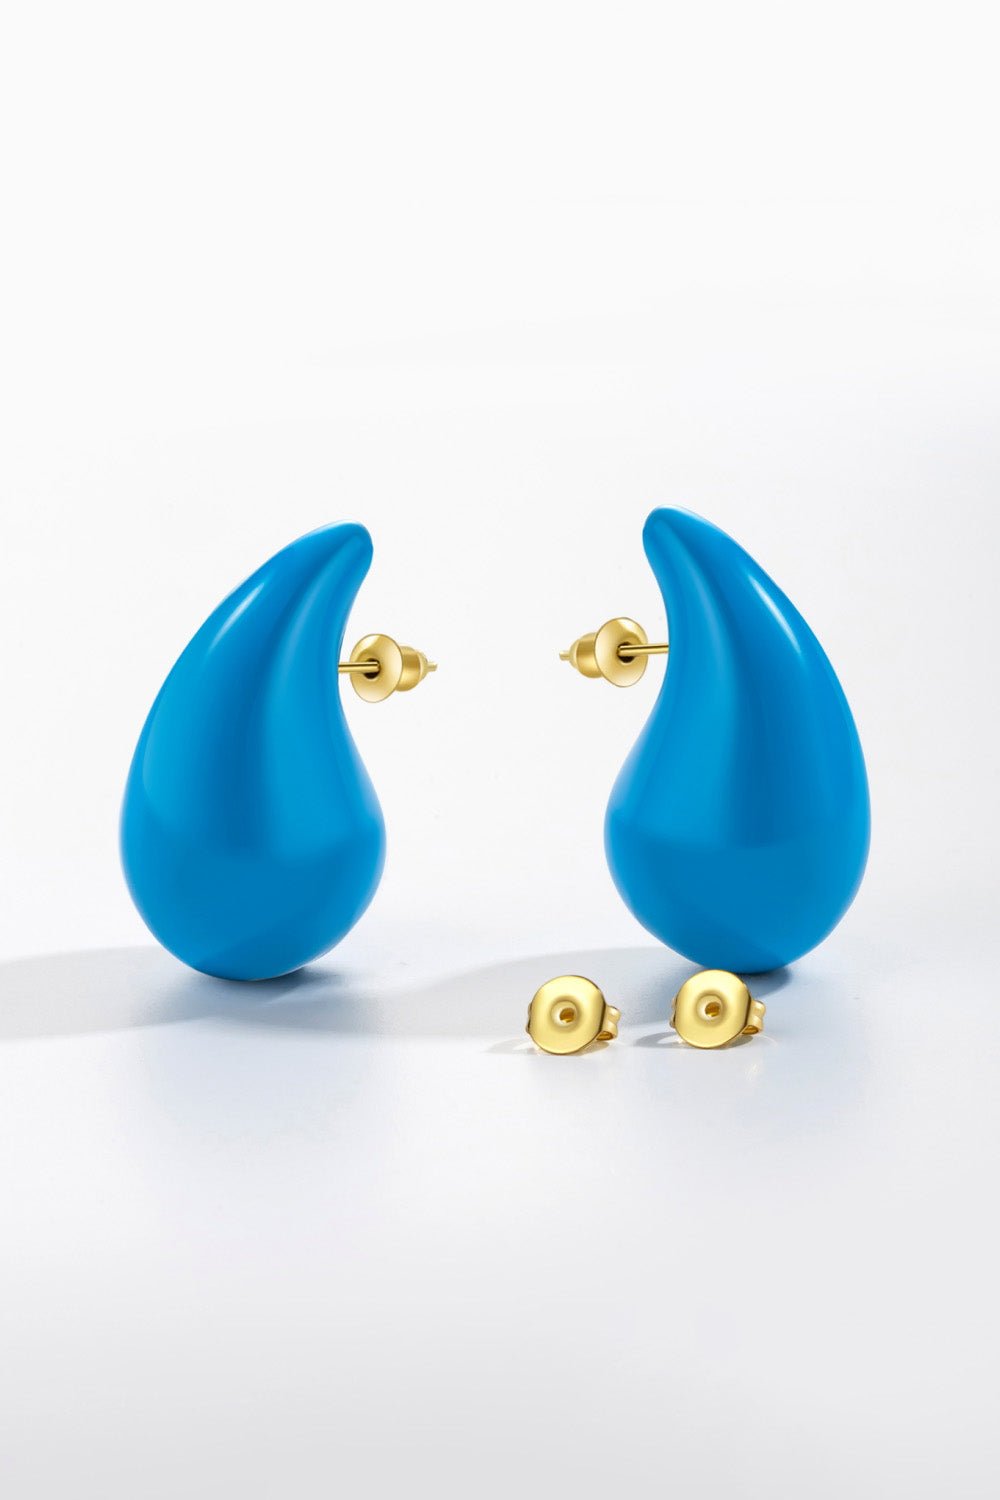 Big Size Water Drop Brass Earrings - Beauty Junkee Collection